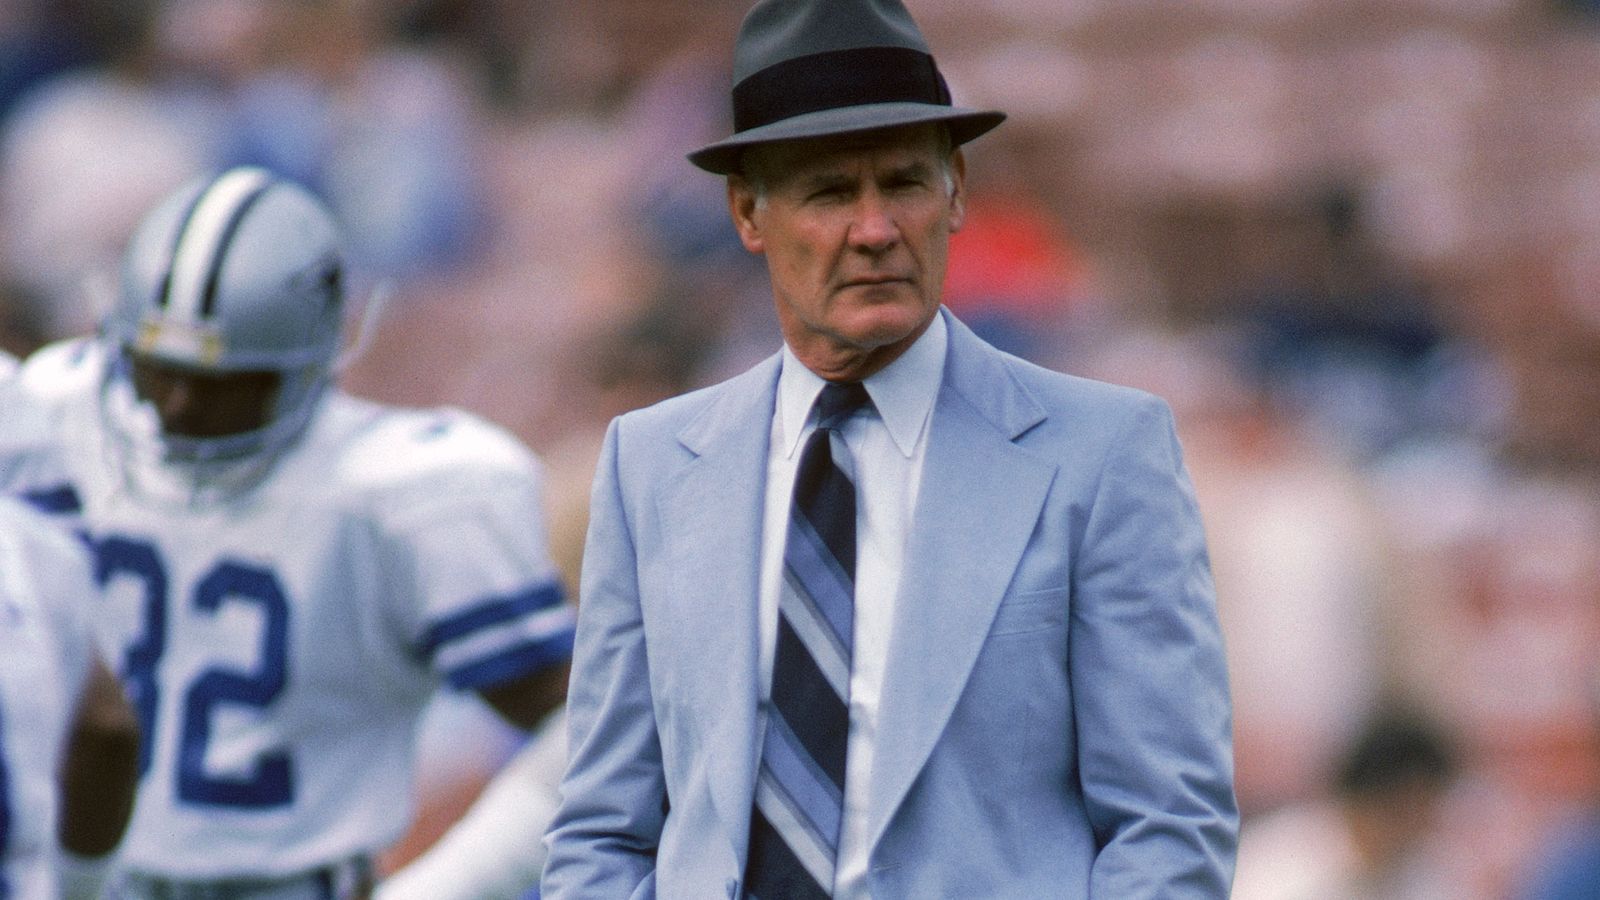 <strong>Dallas Cowboys (1970-1979)</strong><br>Innerhalb dieser Zeit landeten die Cowboys fünf Mal im Super Bowl. Zwei wurden gewonnen, drei verloren. Tom Landry und Roger Staubauch sind die Namen des Erfolgs. Doch viele sehen diese Zeit nicht als echte Dynastie an, da andere Teams noch erfolgreicher waren ...